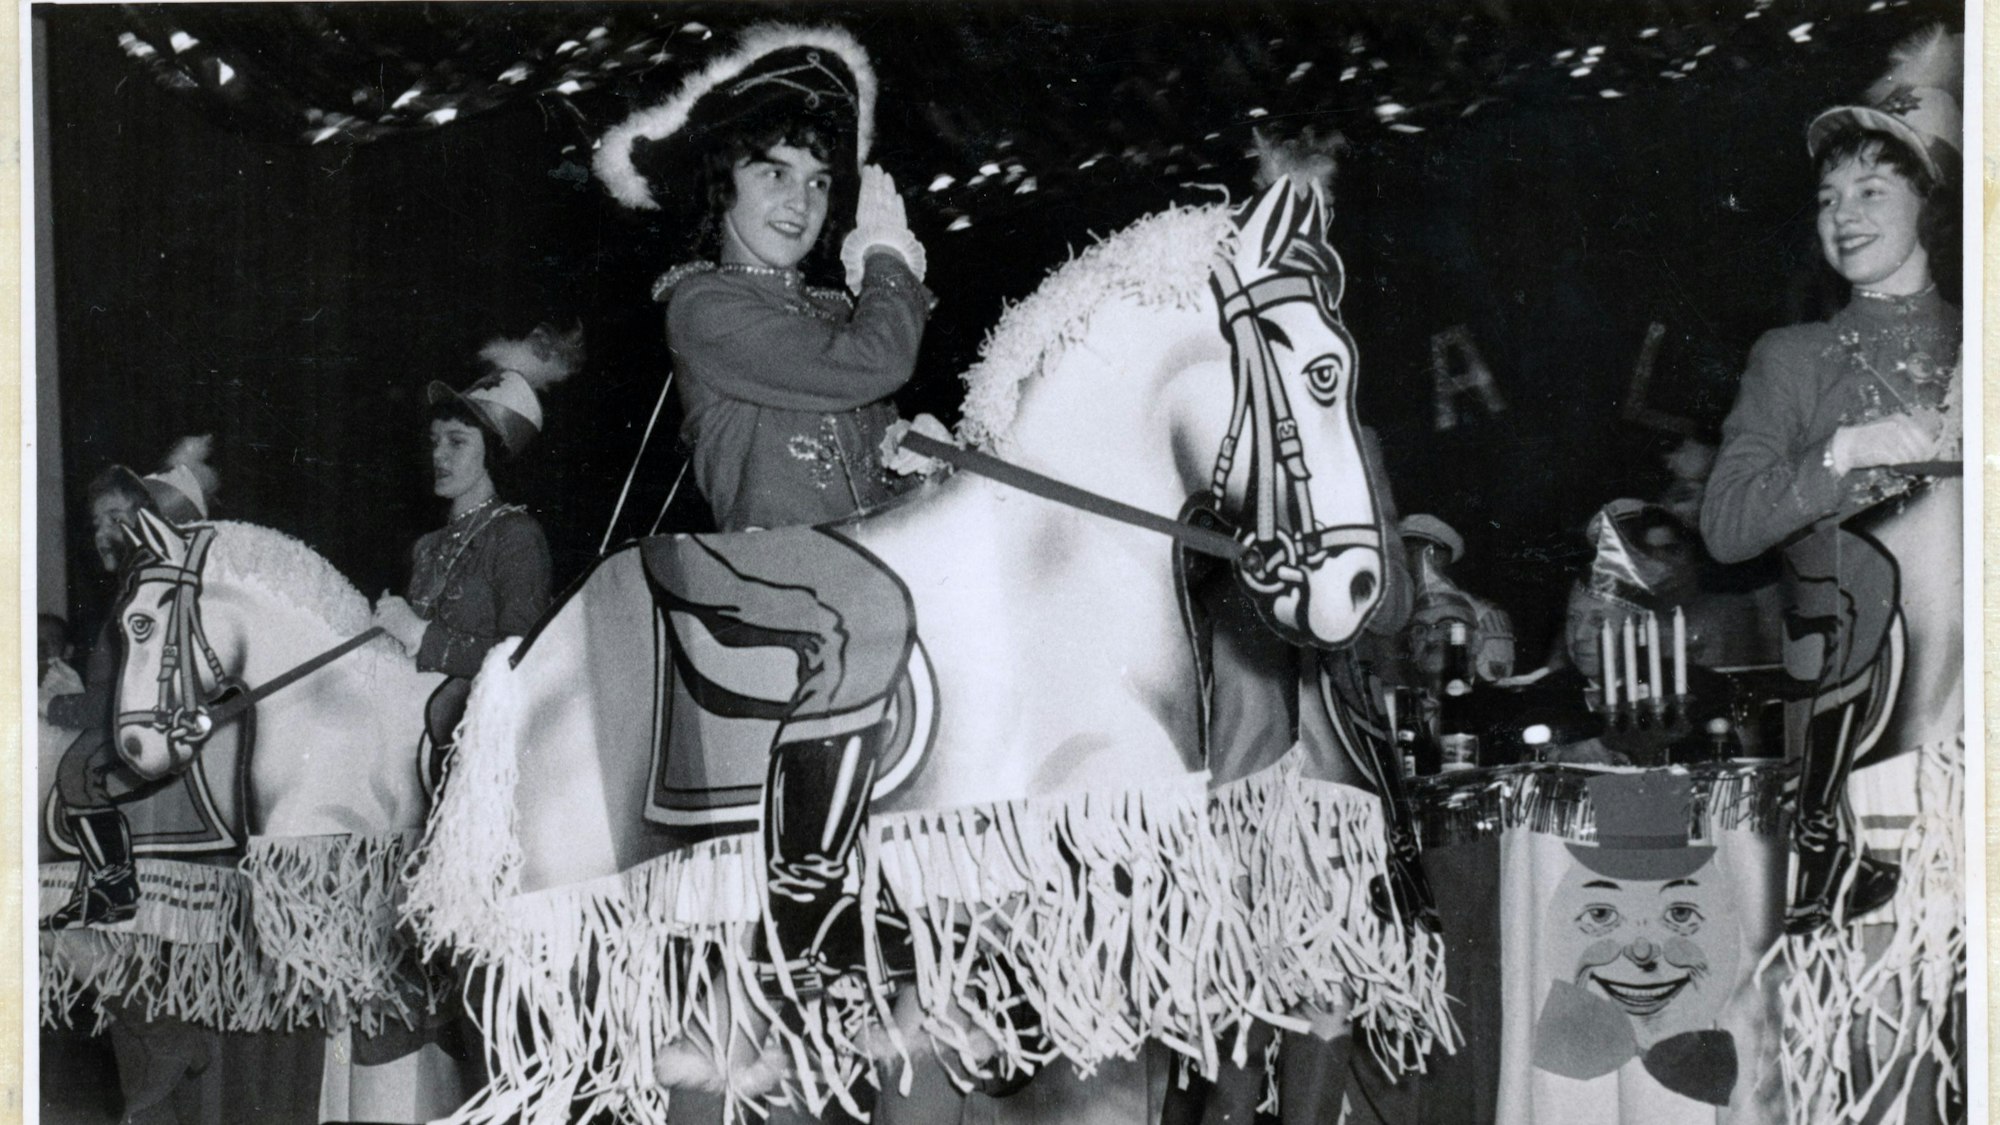 Das Bild stammt aus dem Jahr 1958 und zeigt eine Gardetänzerin mit einer Pferdeattrappe.